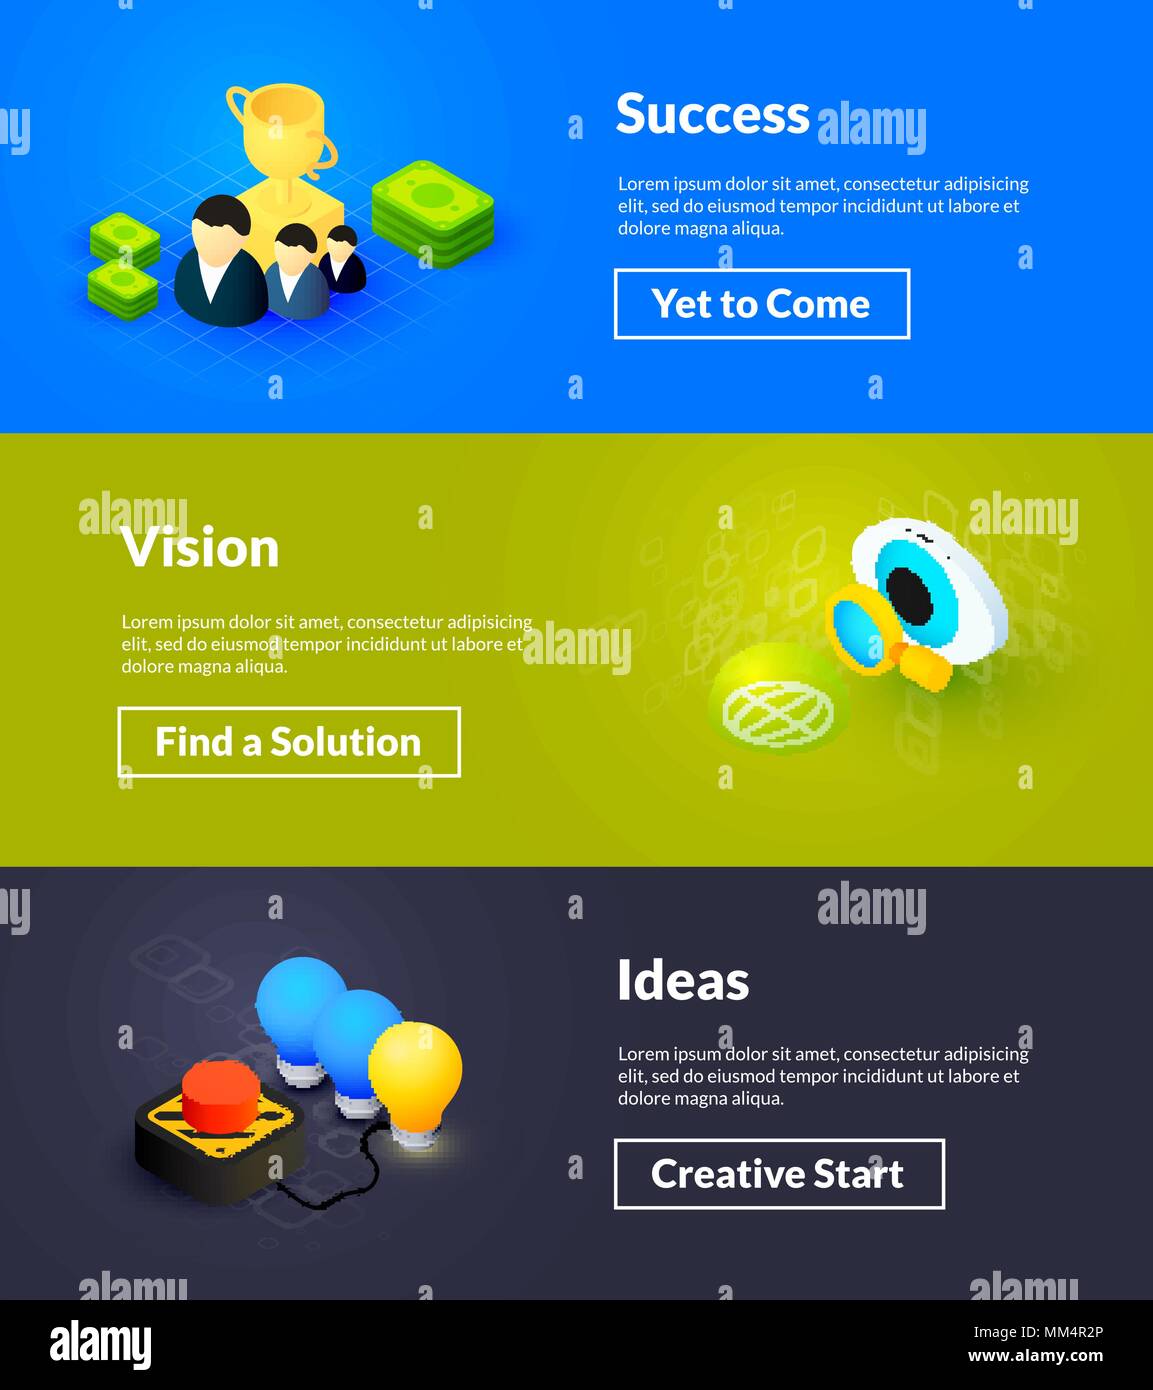 Erfolg Visionen Und Ideen Banner Von Isometrischen Color Design Stock Vektorgrafik Alamy